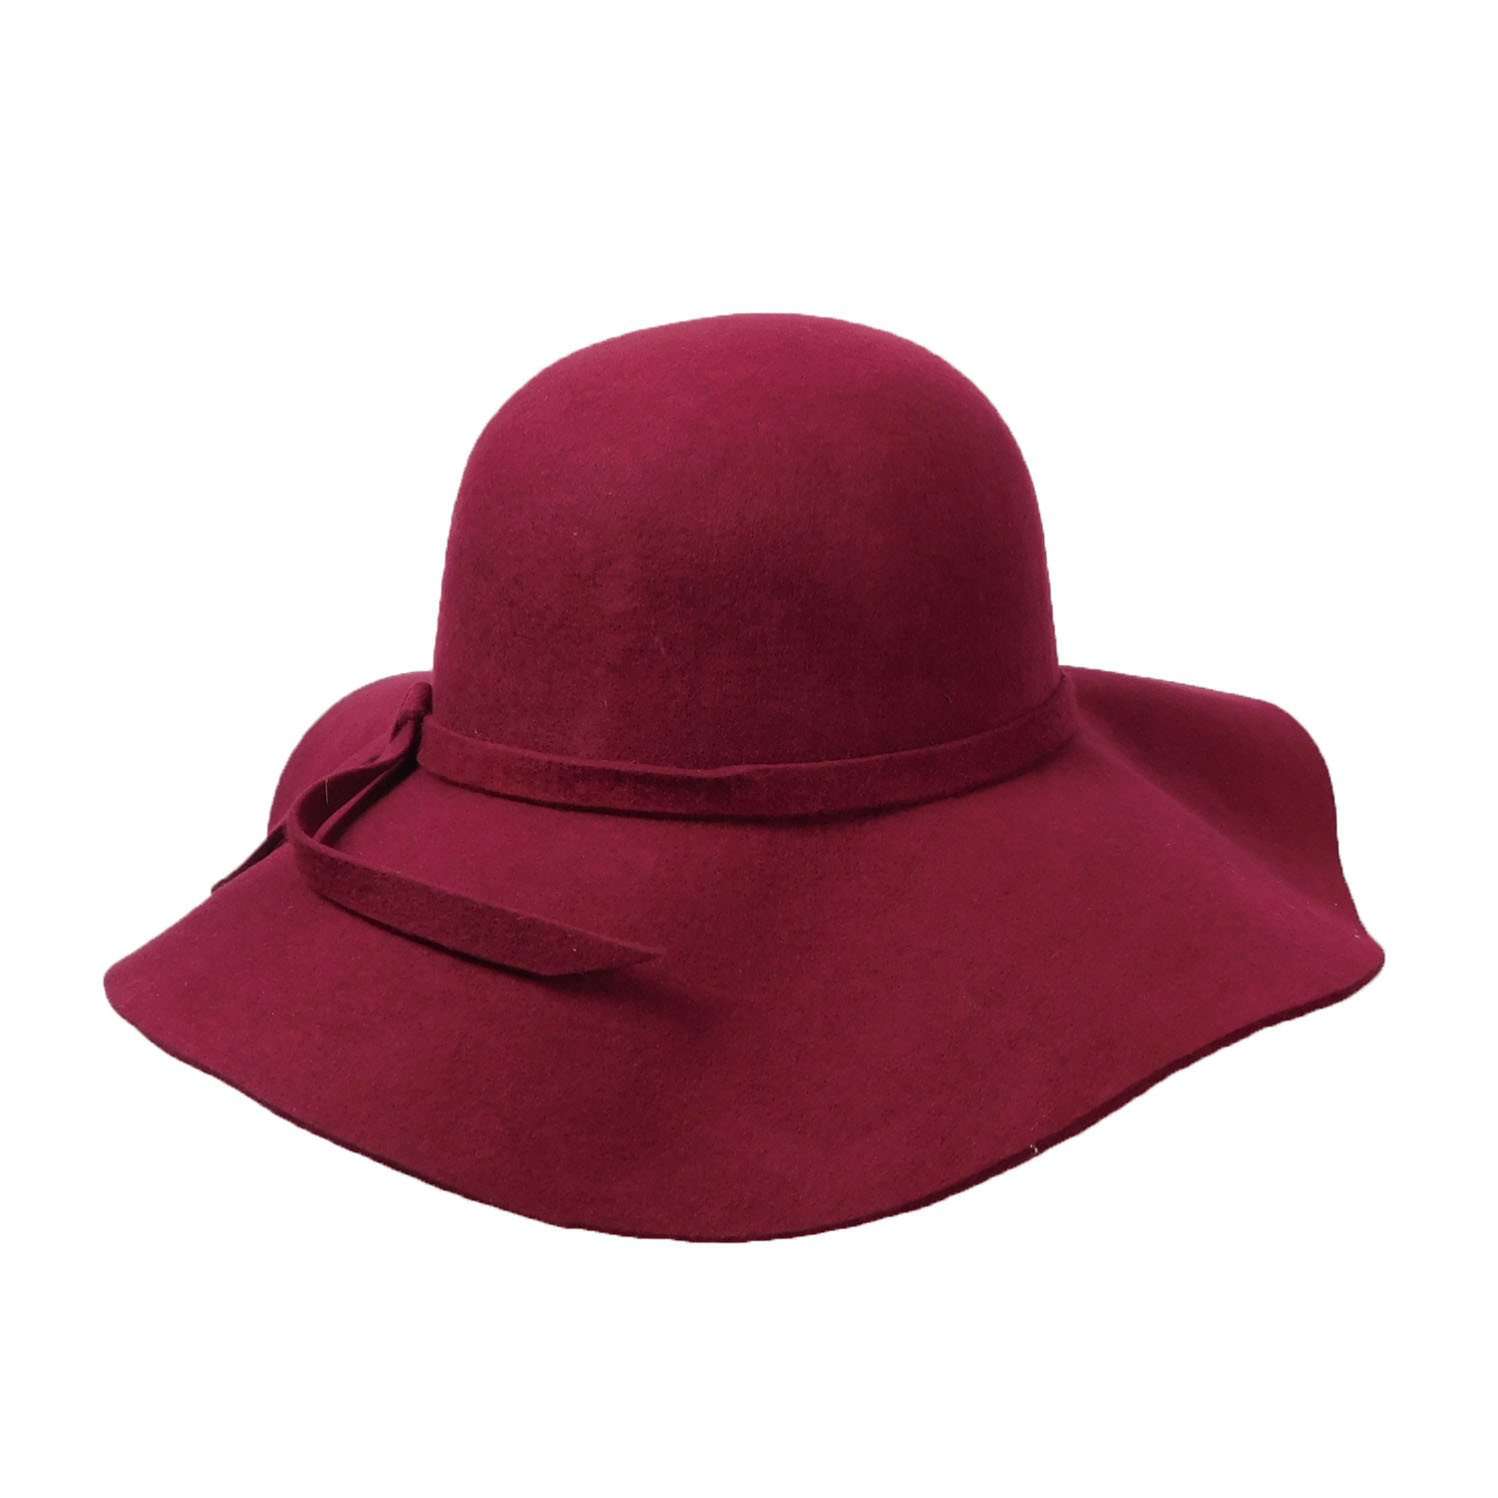 Classic Wool Felt Wide Brim Floppy Hat Wide Brim Sun Hat Boardwalk Style Hats WWWF263BD Burgundy  